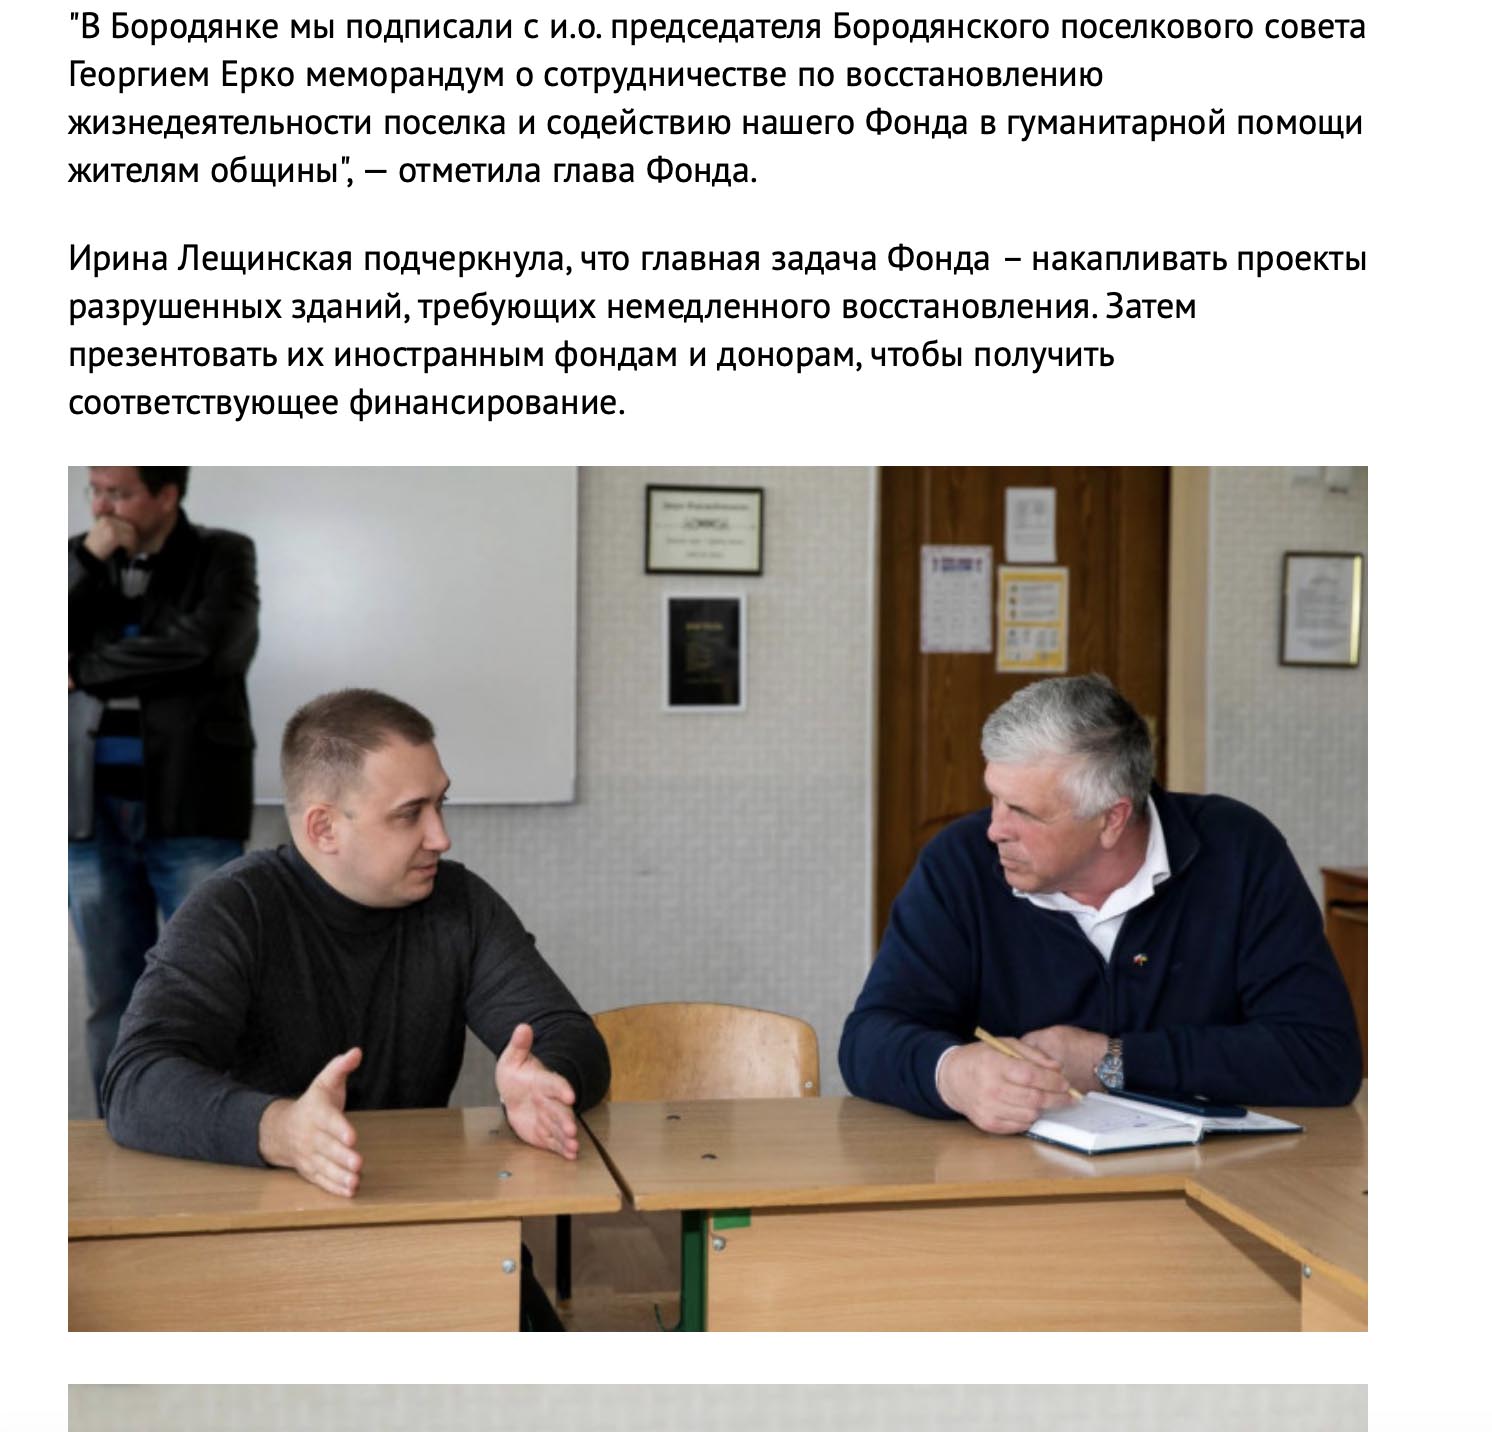 Фото взяті з сайту Depo.ua, які підтверджують зв'язок Ірини та Віктора Лещинських з БО "Український реконструкційний фонд"  